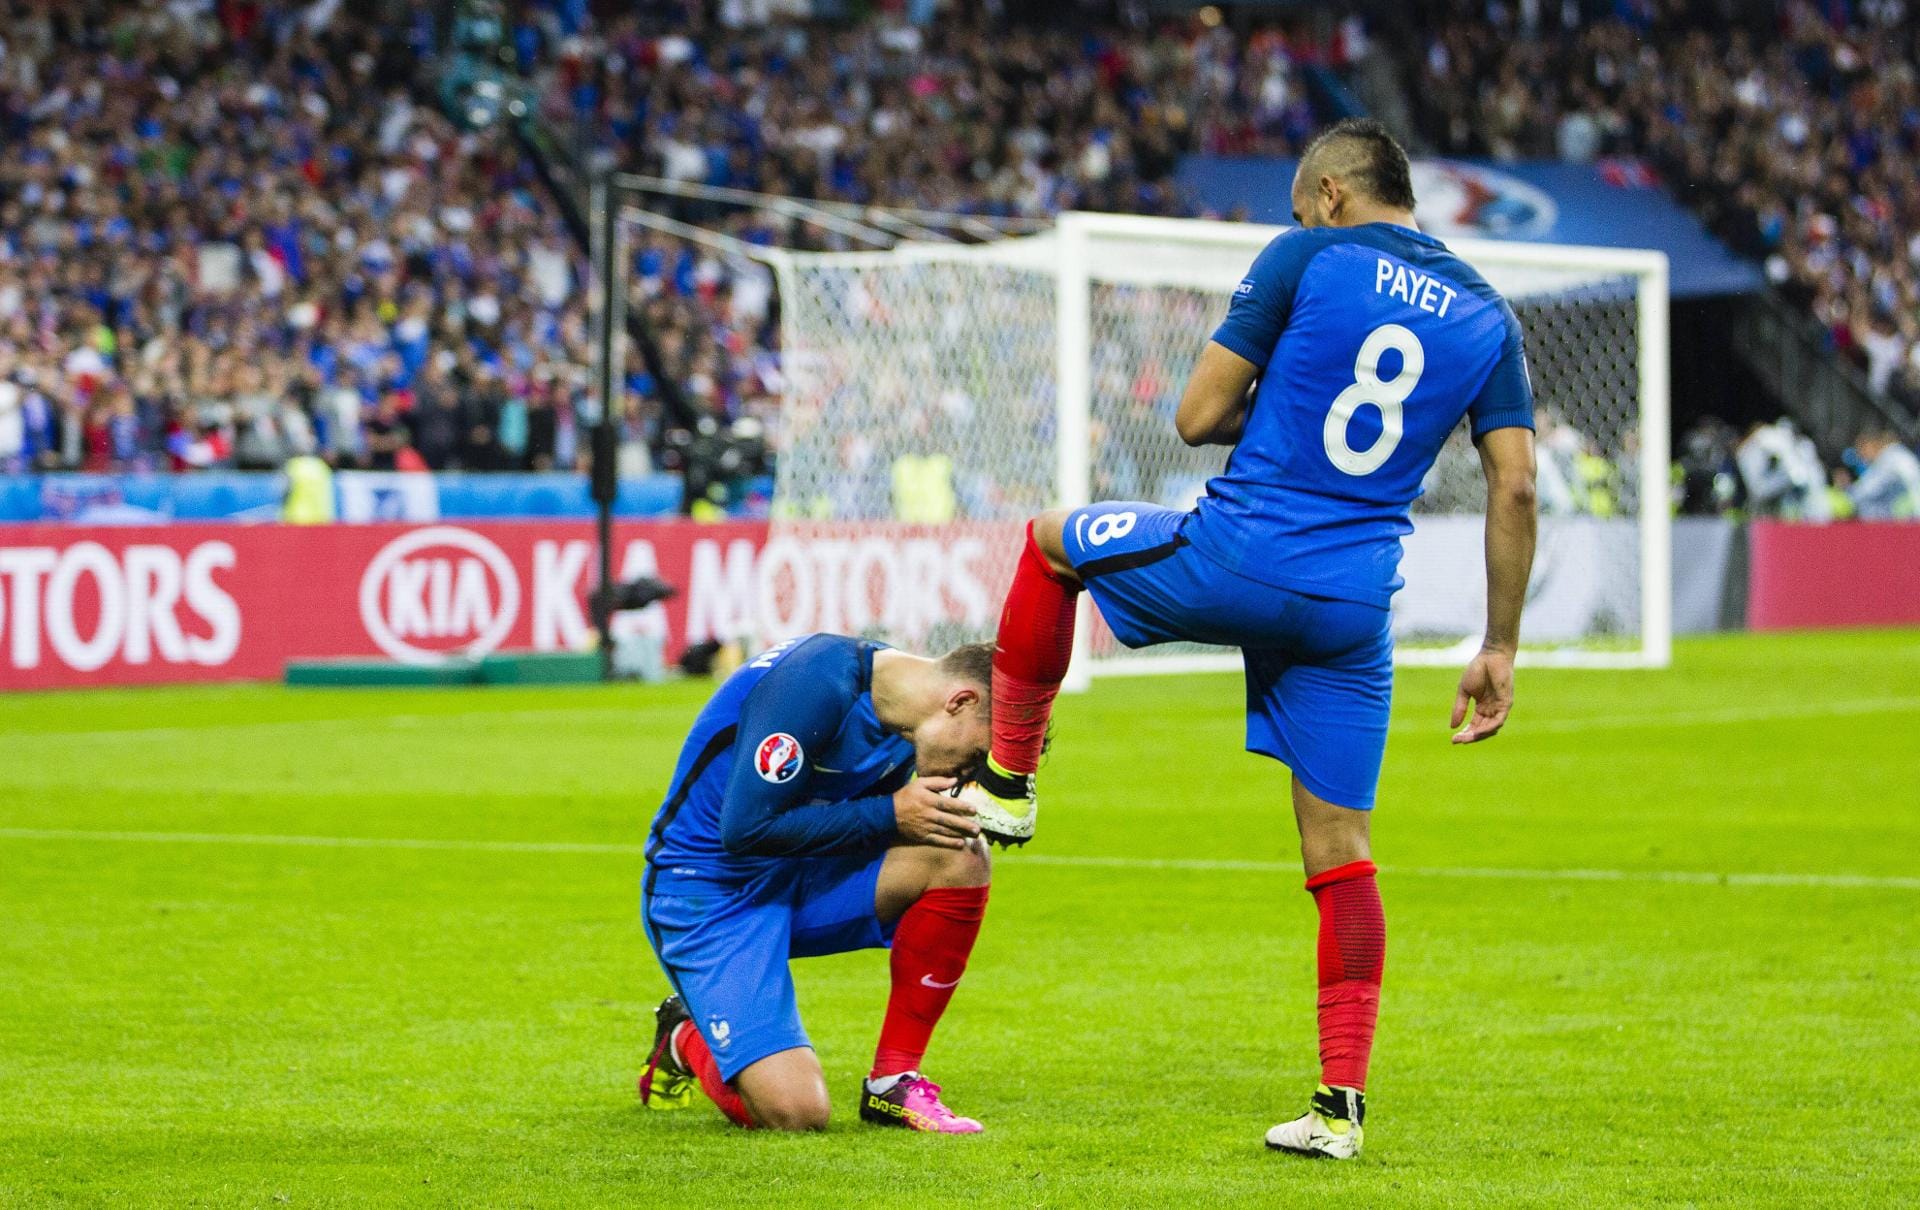 Küss den Schuh: Antoine Griezmann (Frankreich) küsst den Schuh von Dimitri Payet, nachdem dieser ein Tor gegen Island geschossen hat.